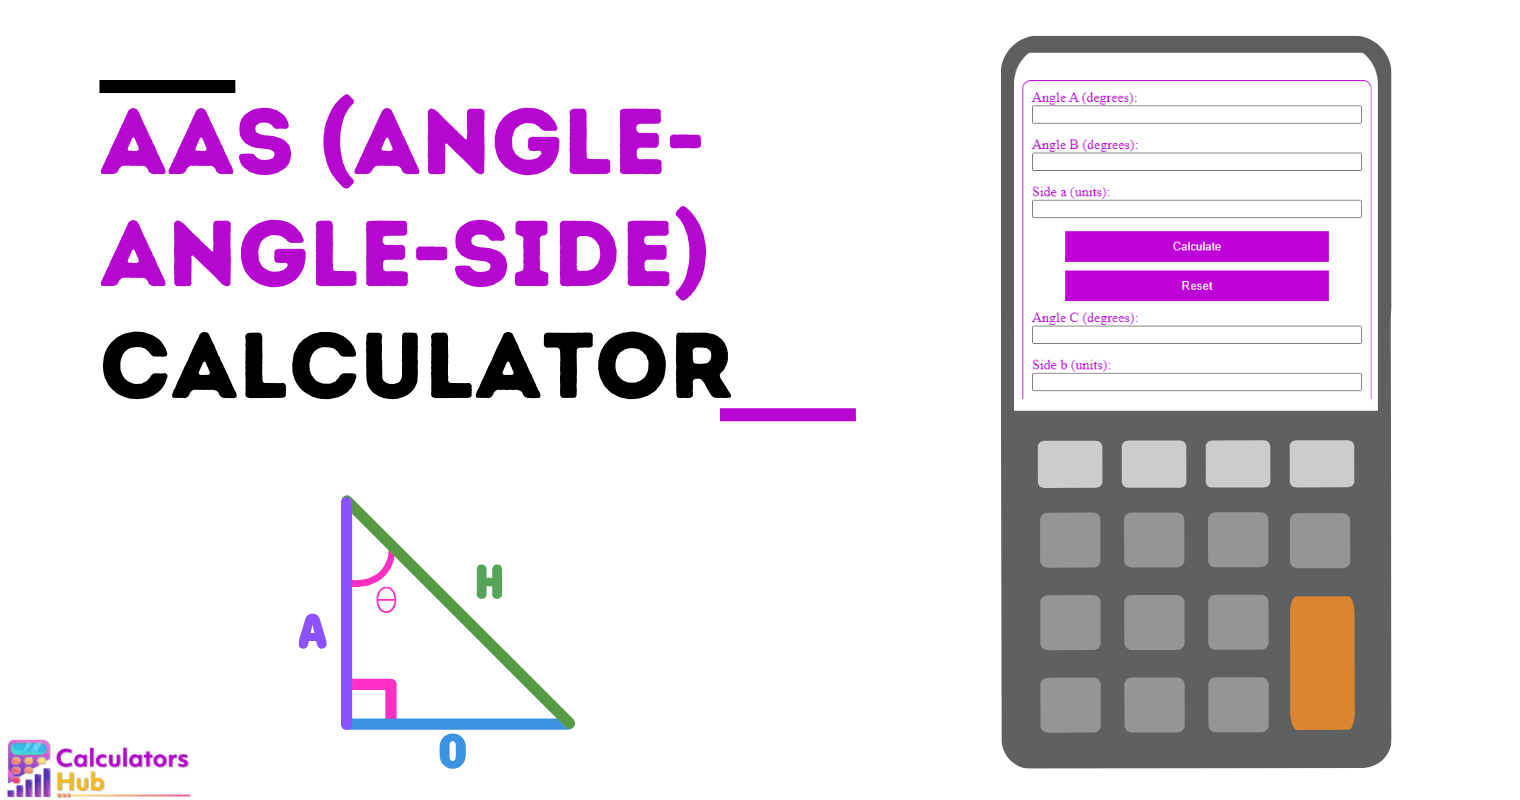 AAS (Angle-Angle-Side) Calculator